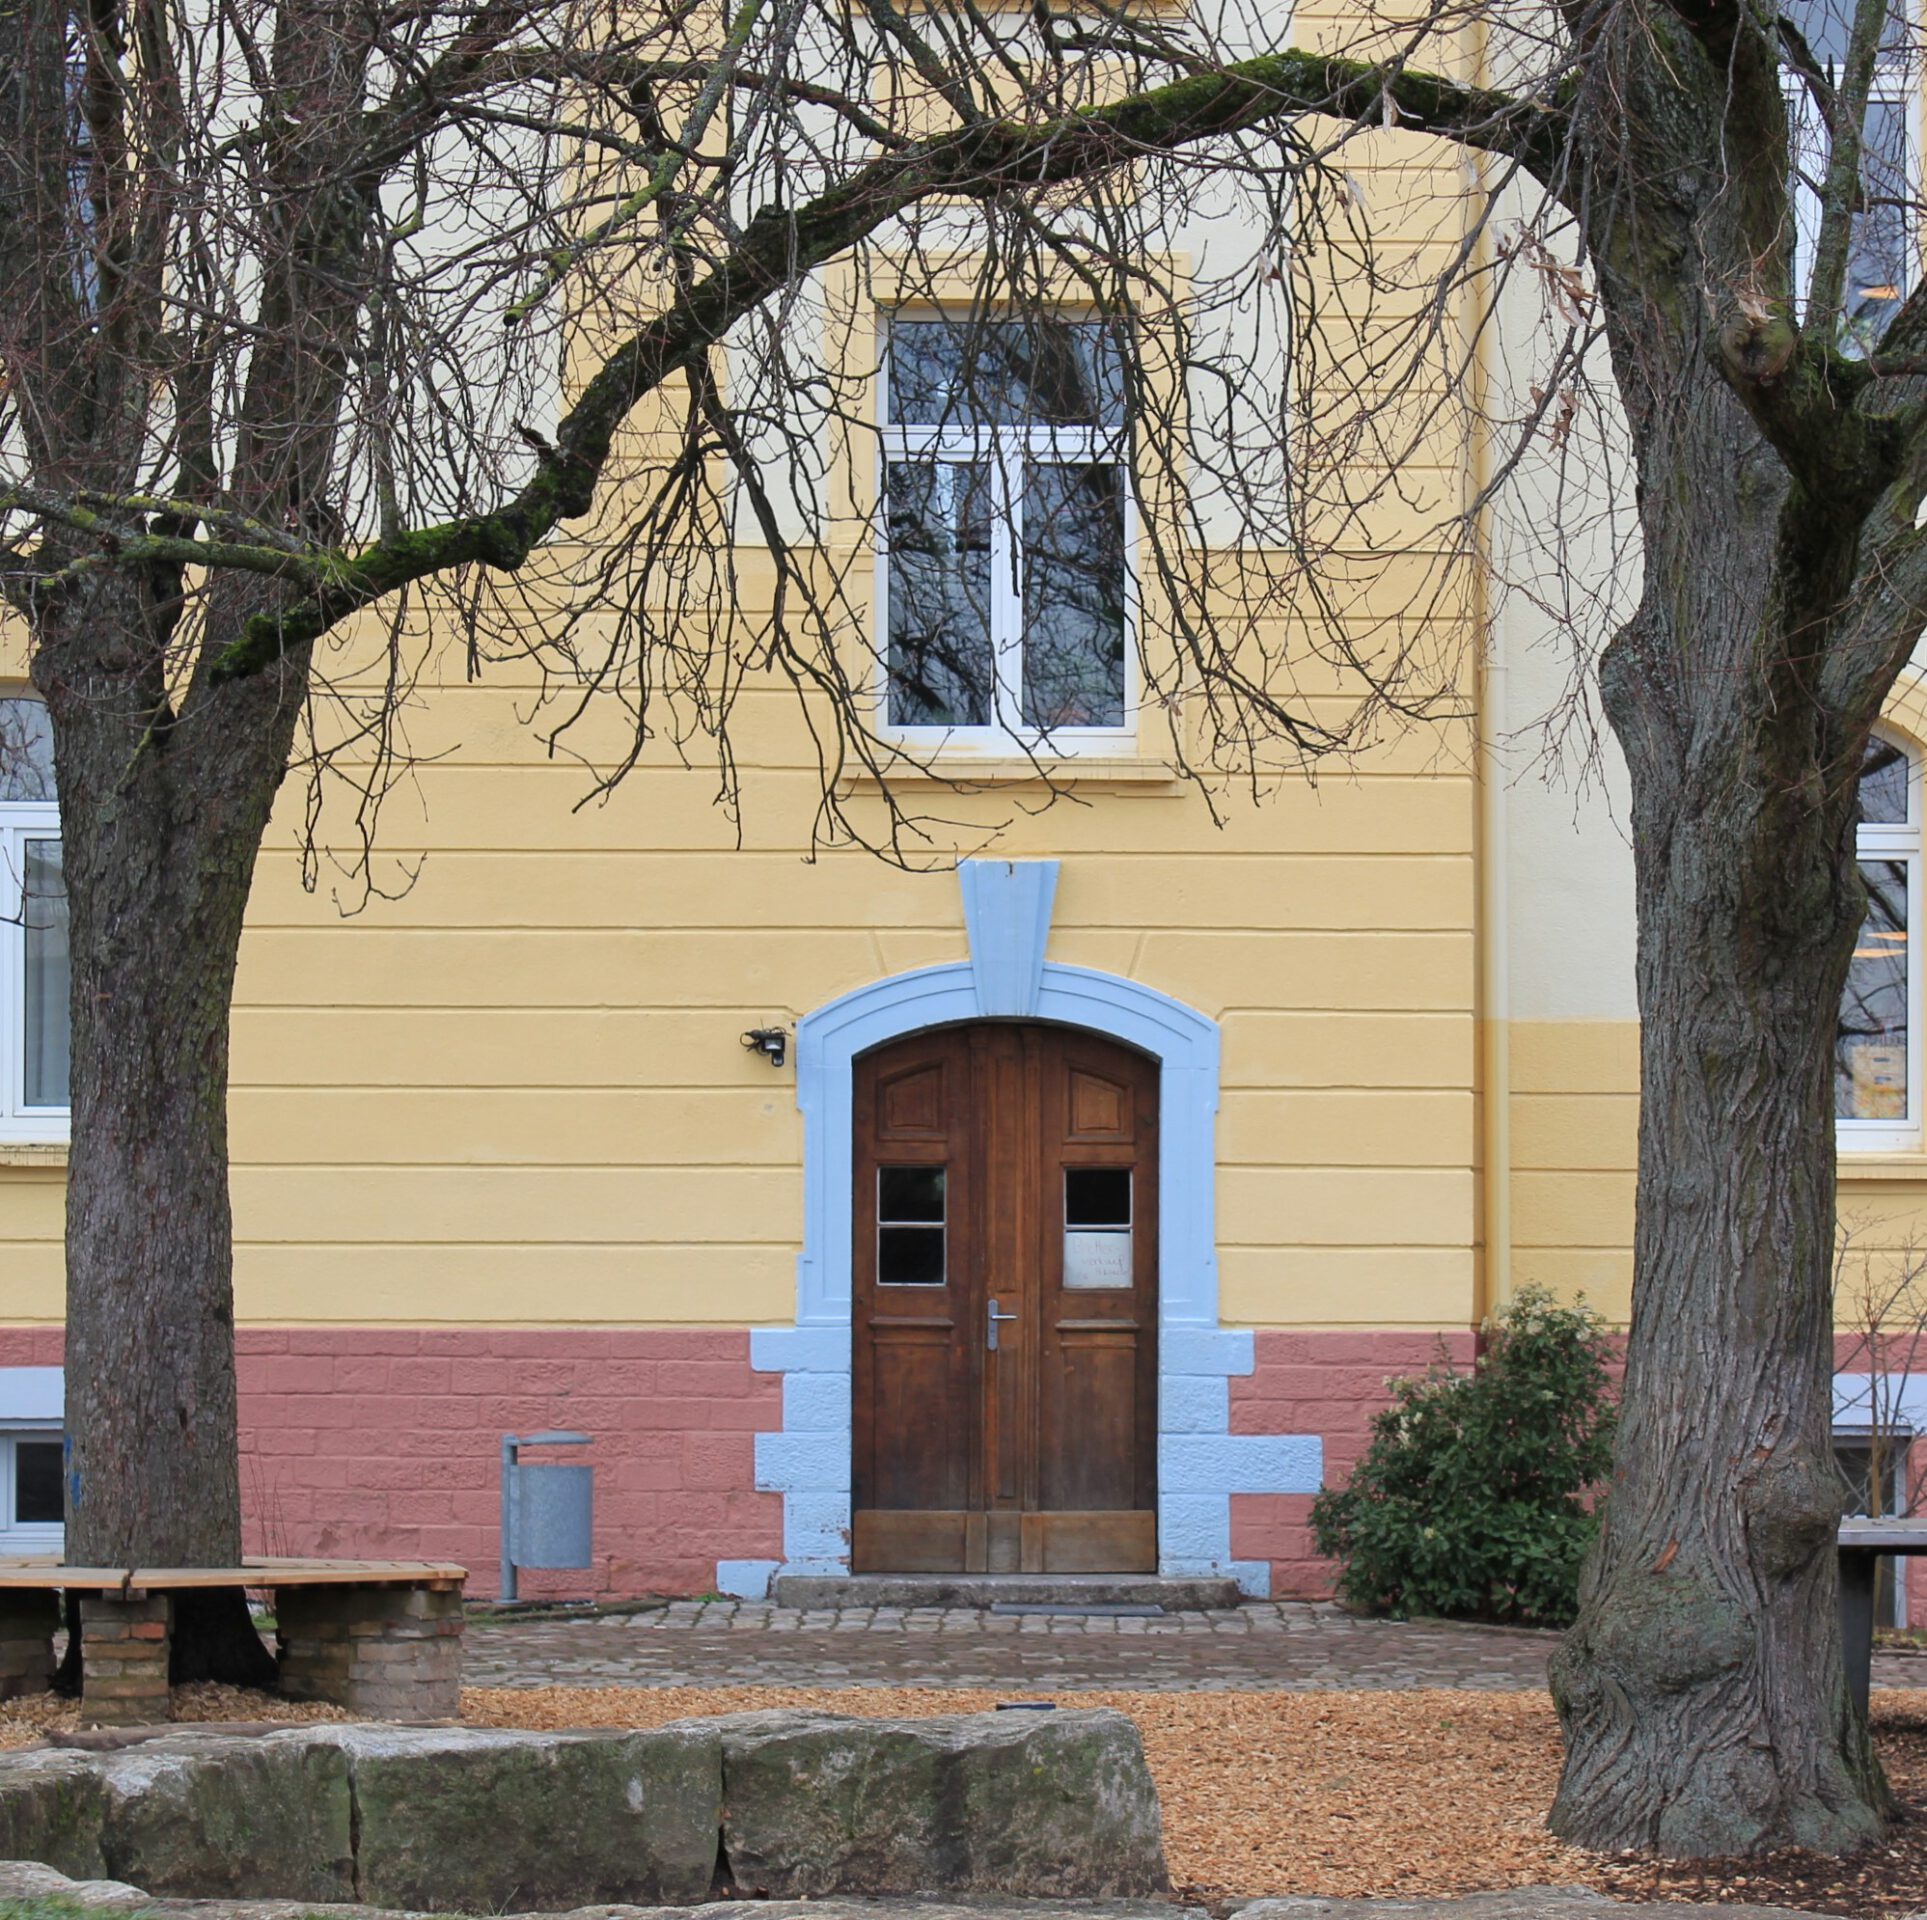 Freie Waldorfschule Rastatt e.V.